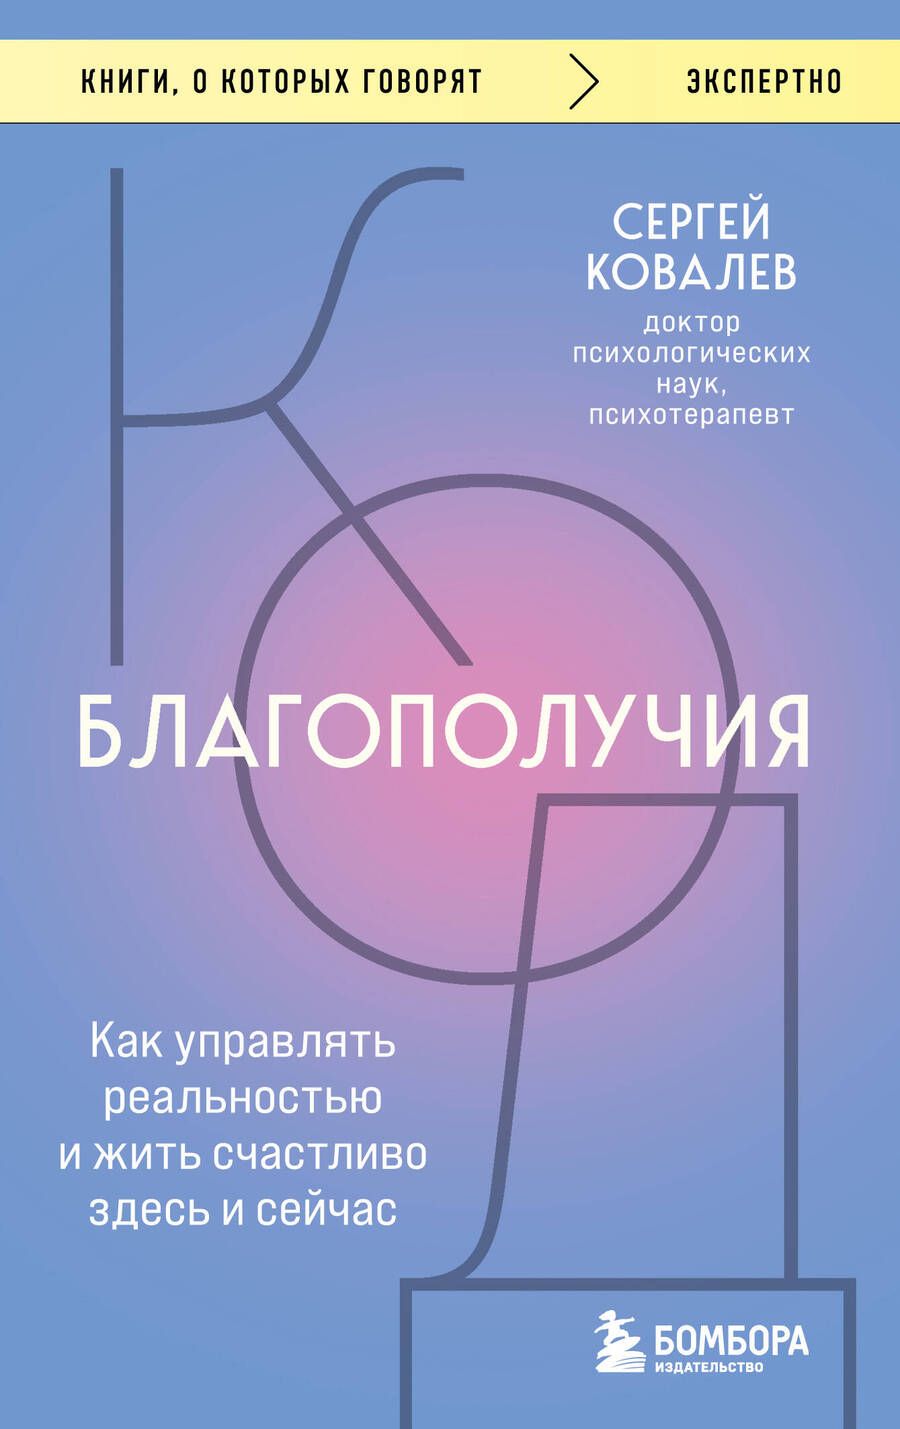 Обложка книги "Ковалев: Код благополучия. Как управлять реальностью и жить счастливо здесь и сейчас"